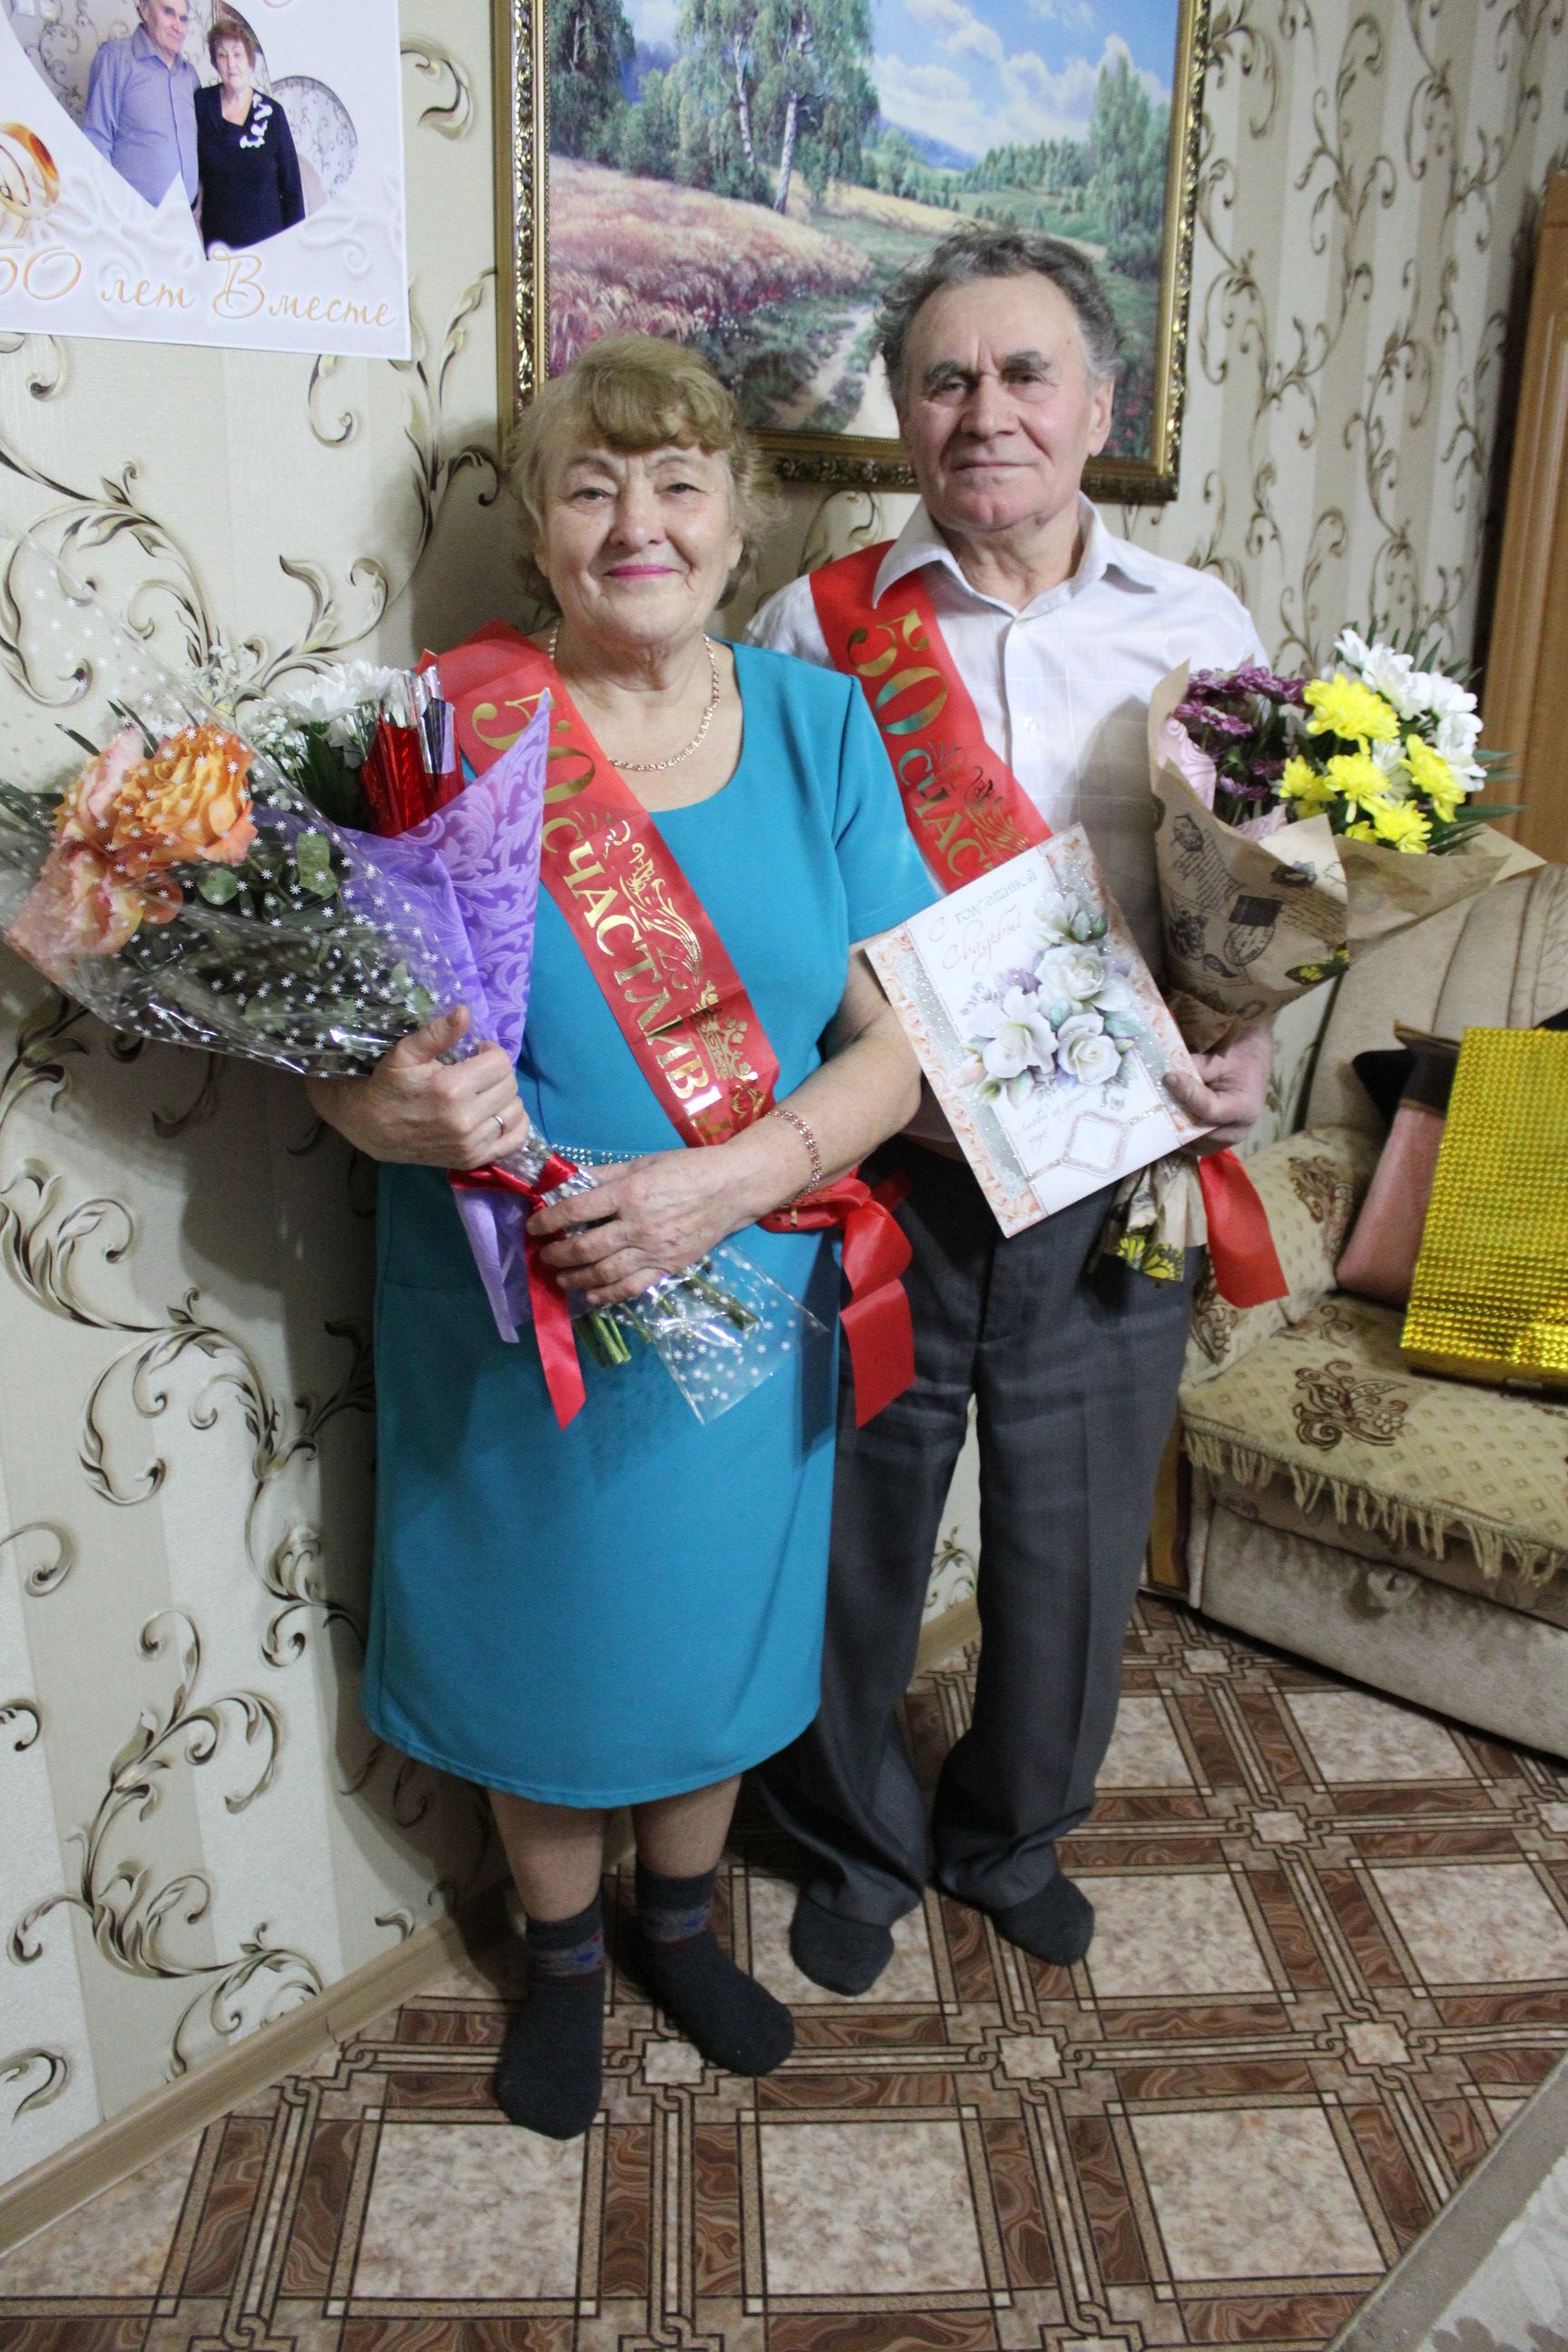 Любовь длиною в 50 лет: супруги Архиповы отпраздновали золотую свадьбу